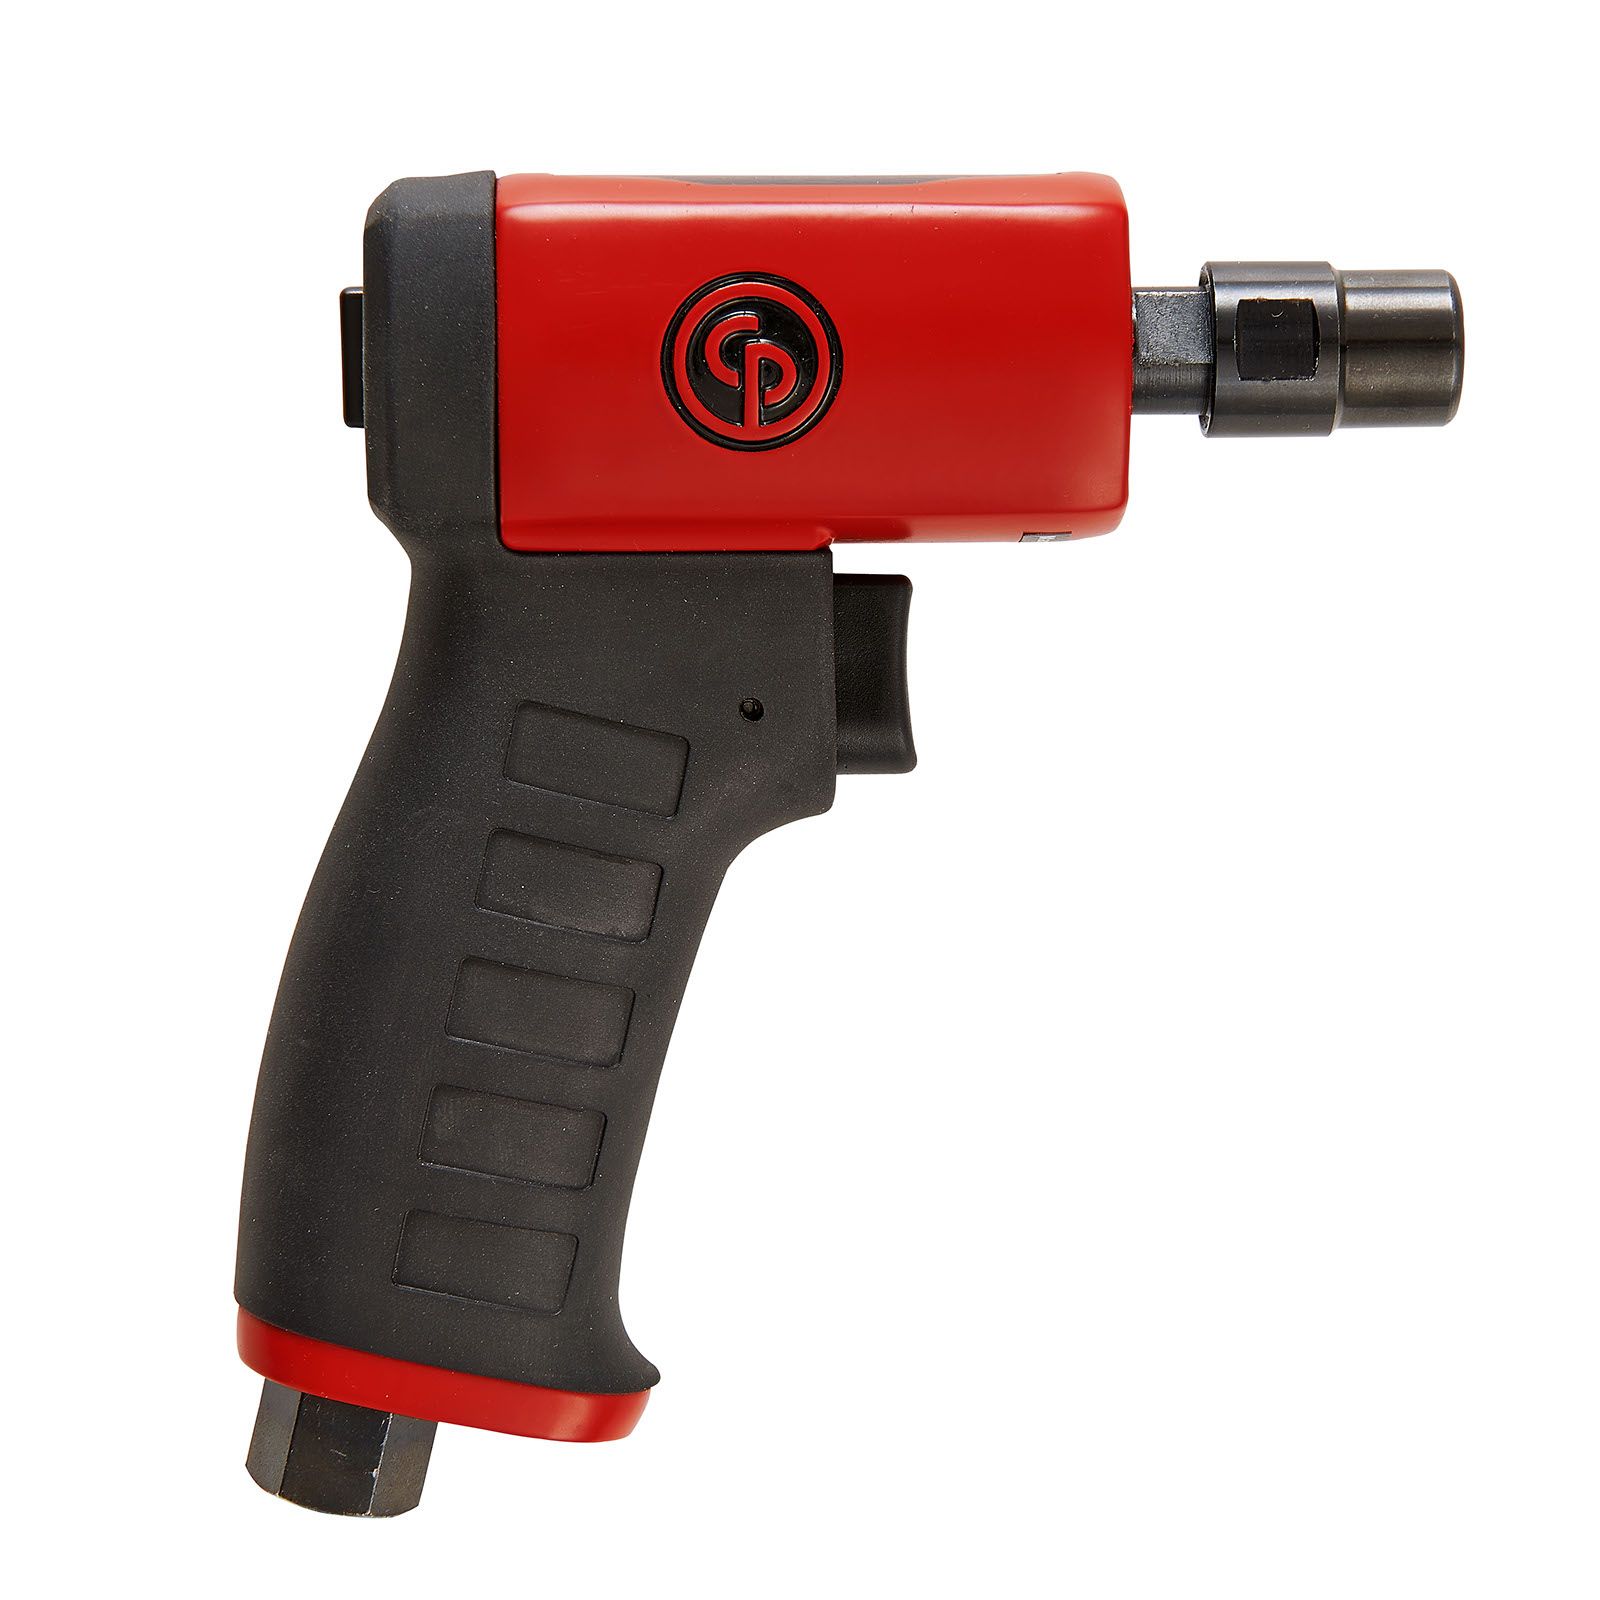 CP9107 Series - Pistol die grinder 제품 사진